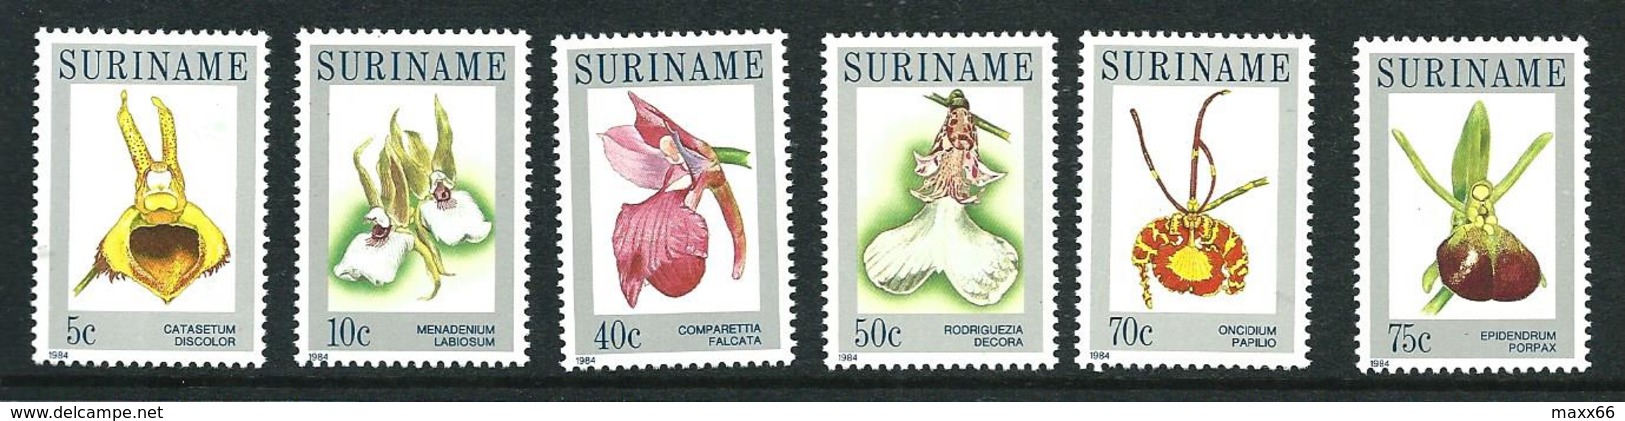 SURINAME MNH - 1984 Orchids - Vari Cent - Michel SR 1065 1070 - Suriname